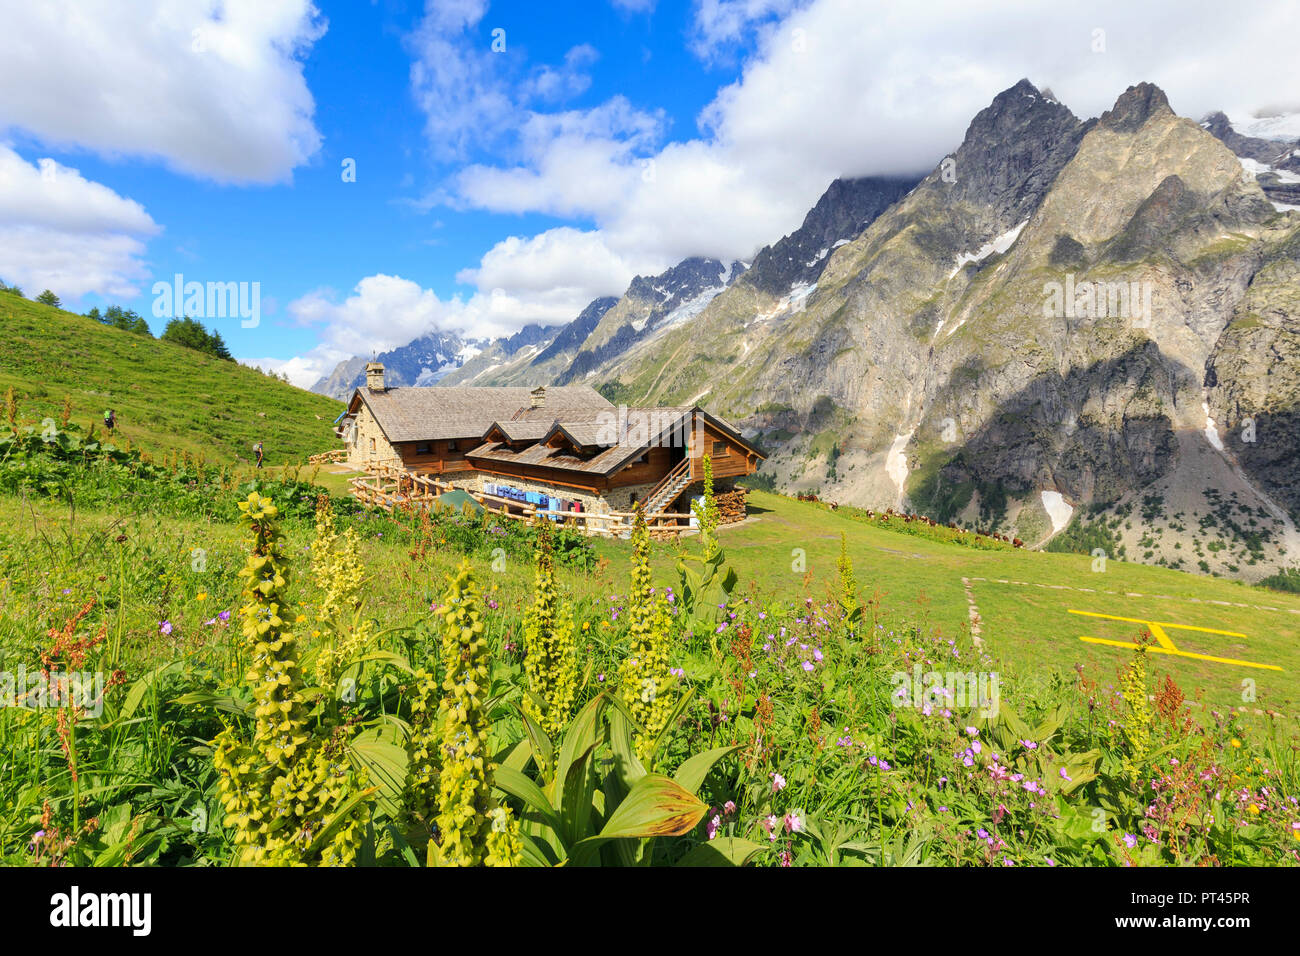 Summer flowering at Bonatti Hut, Bonatti Hut, Ferret Valley, Courmayeur, Aosta Valley, Italy, Europe Stock Photo